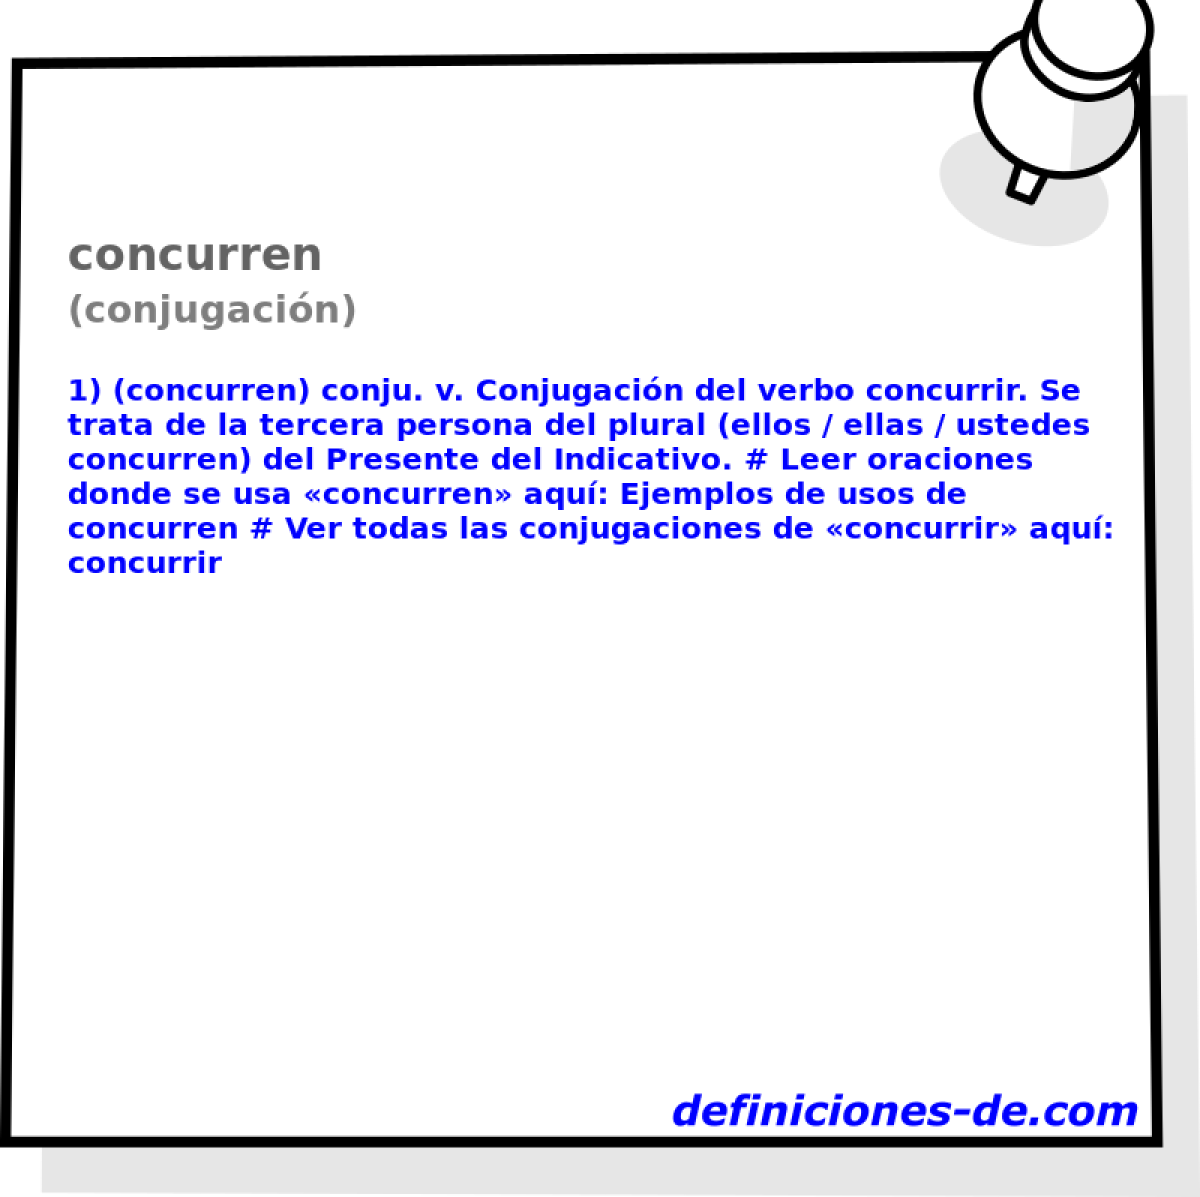 concurren (conjugacin)